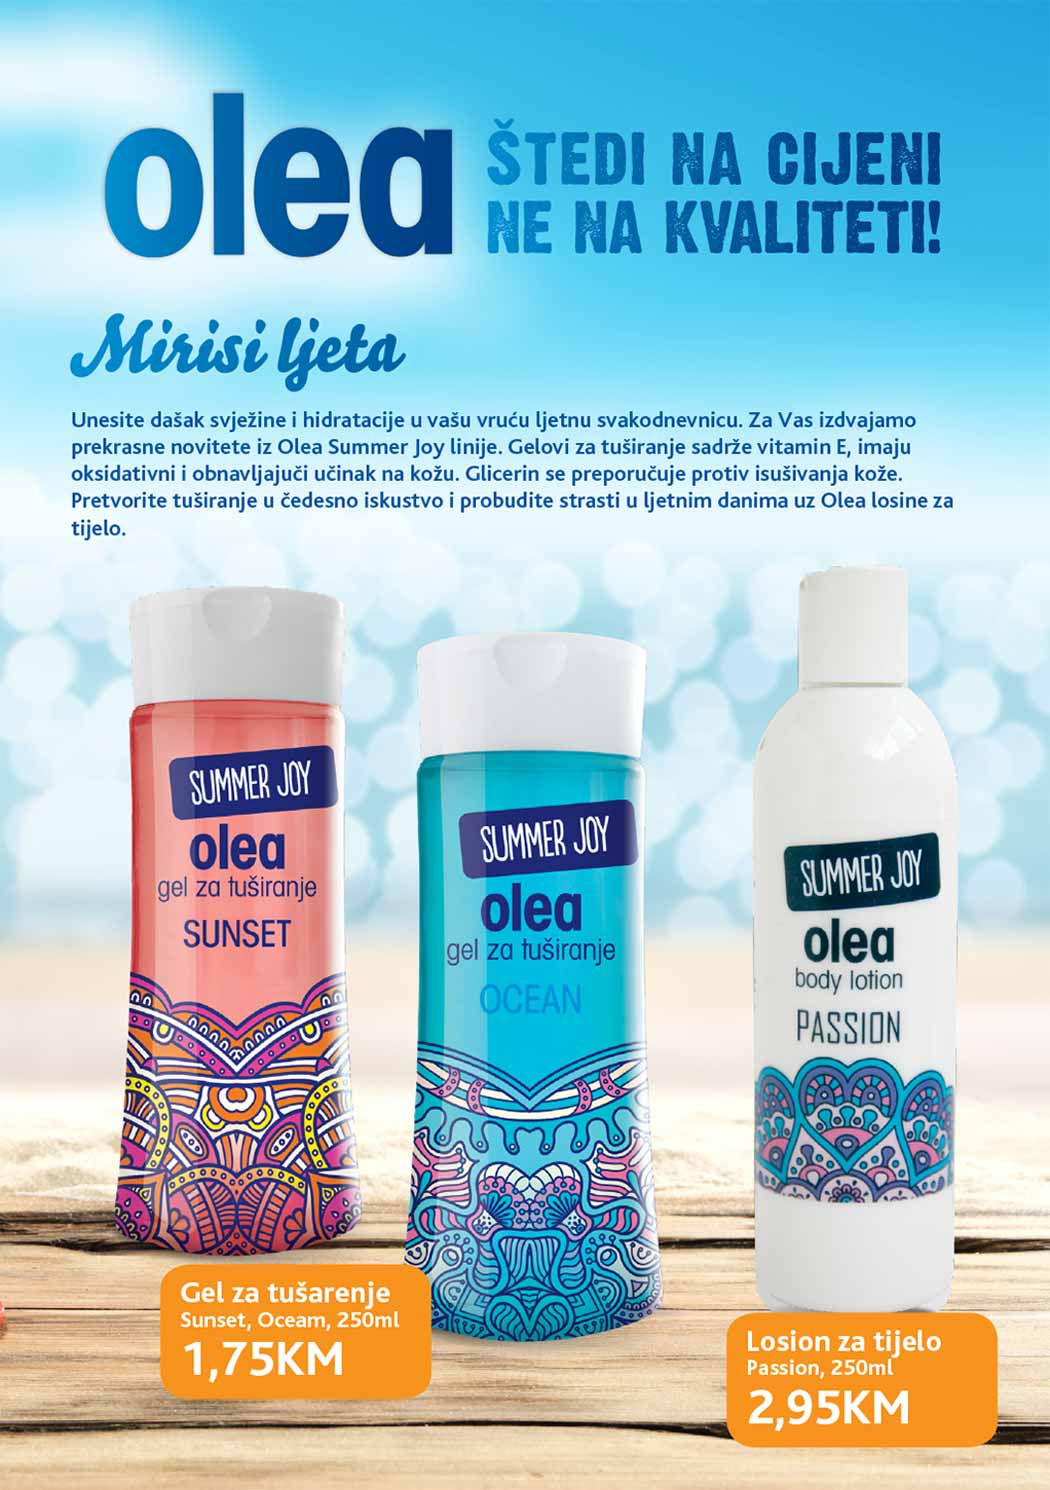 Konzum Olea katalog - 30.09.2017.